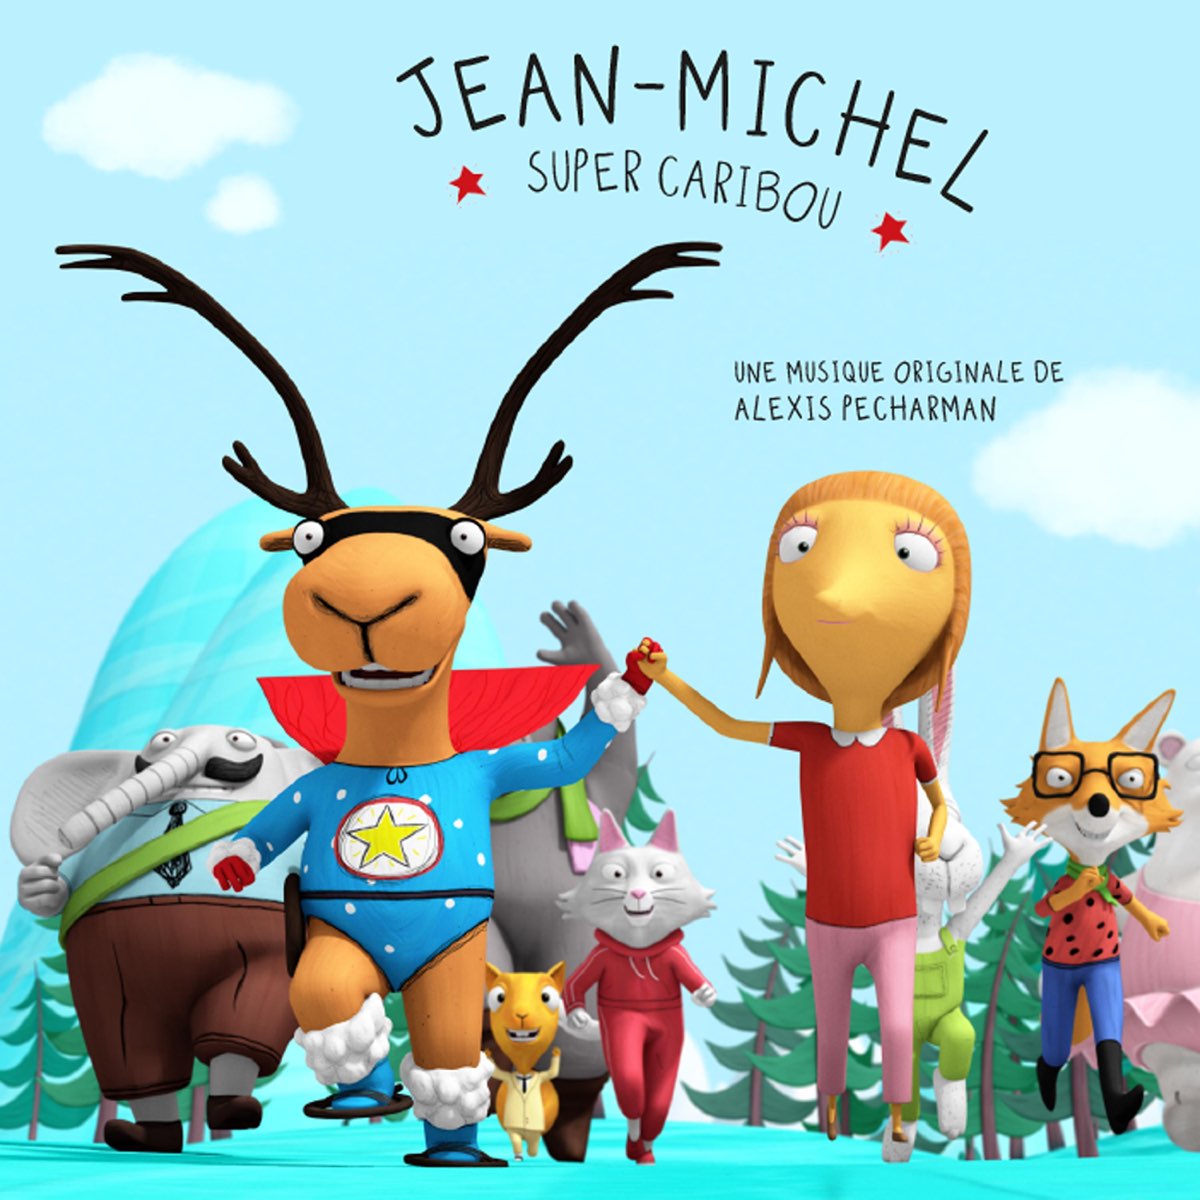 Jean-Michel Super Caribou – Album par Alexis Pecharman – Apple Music